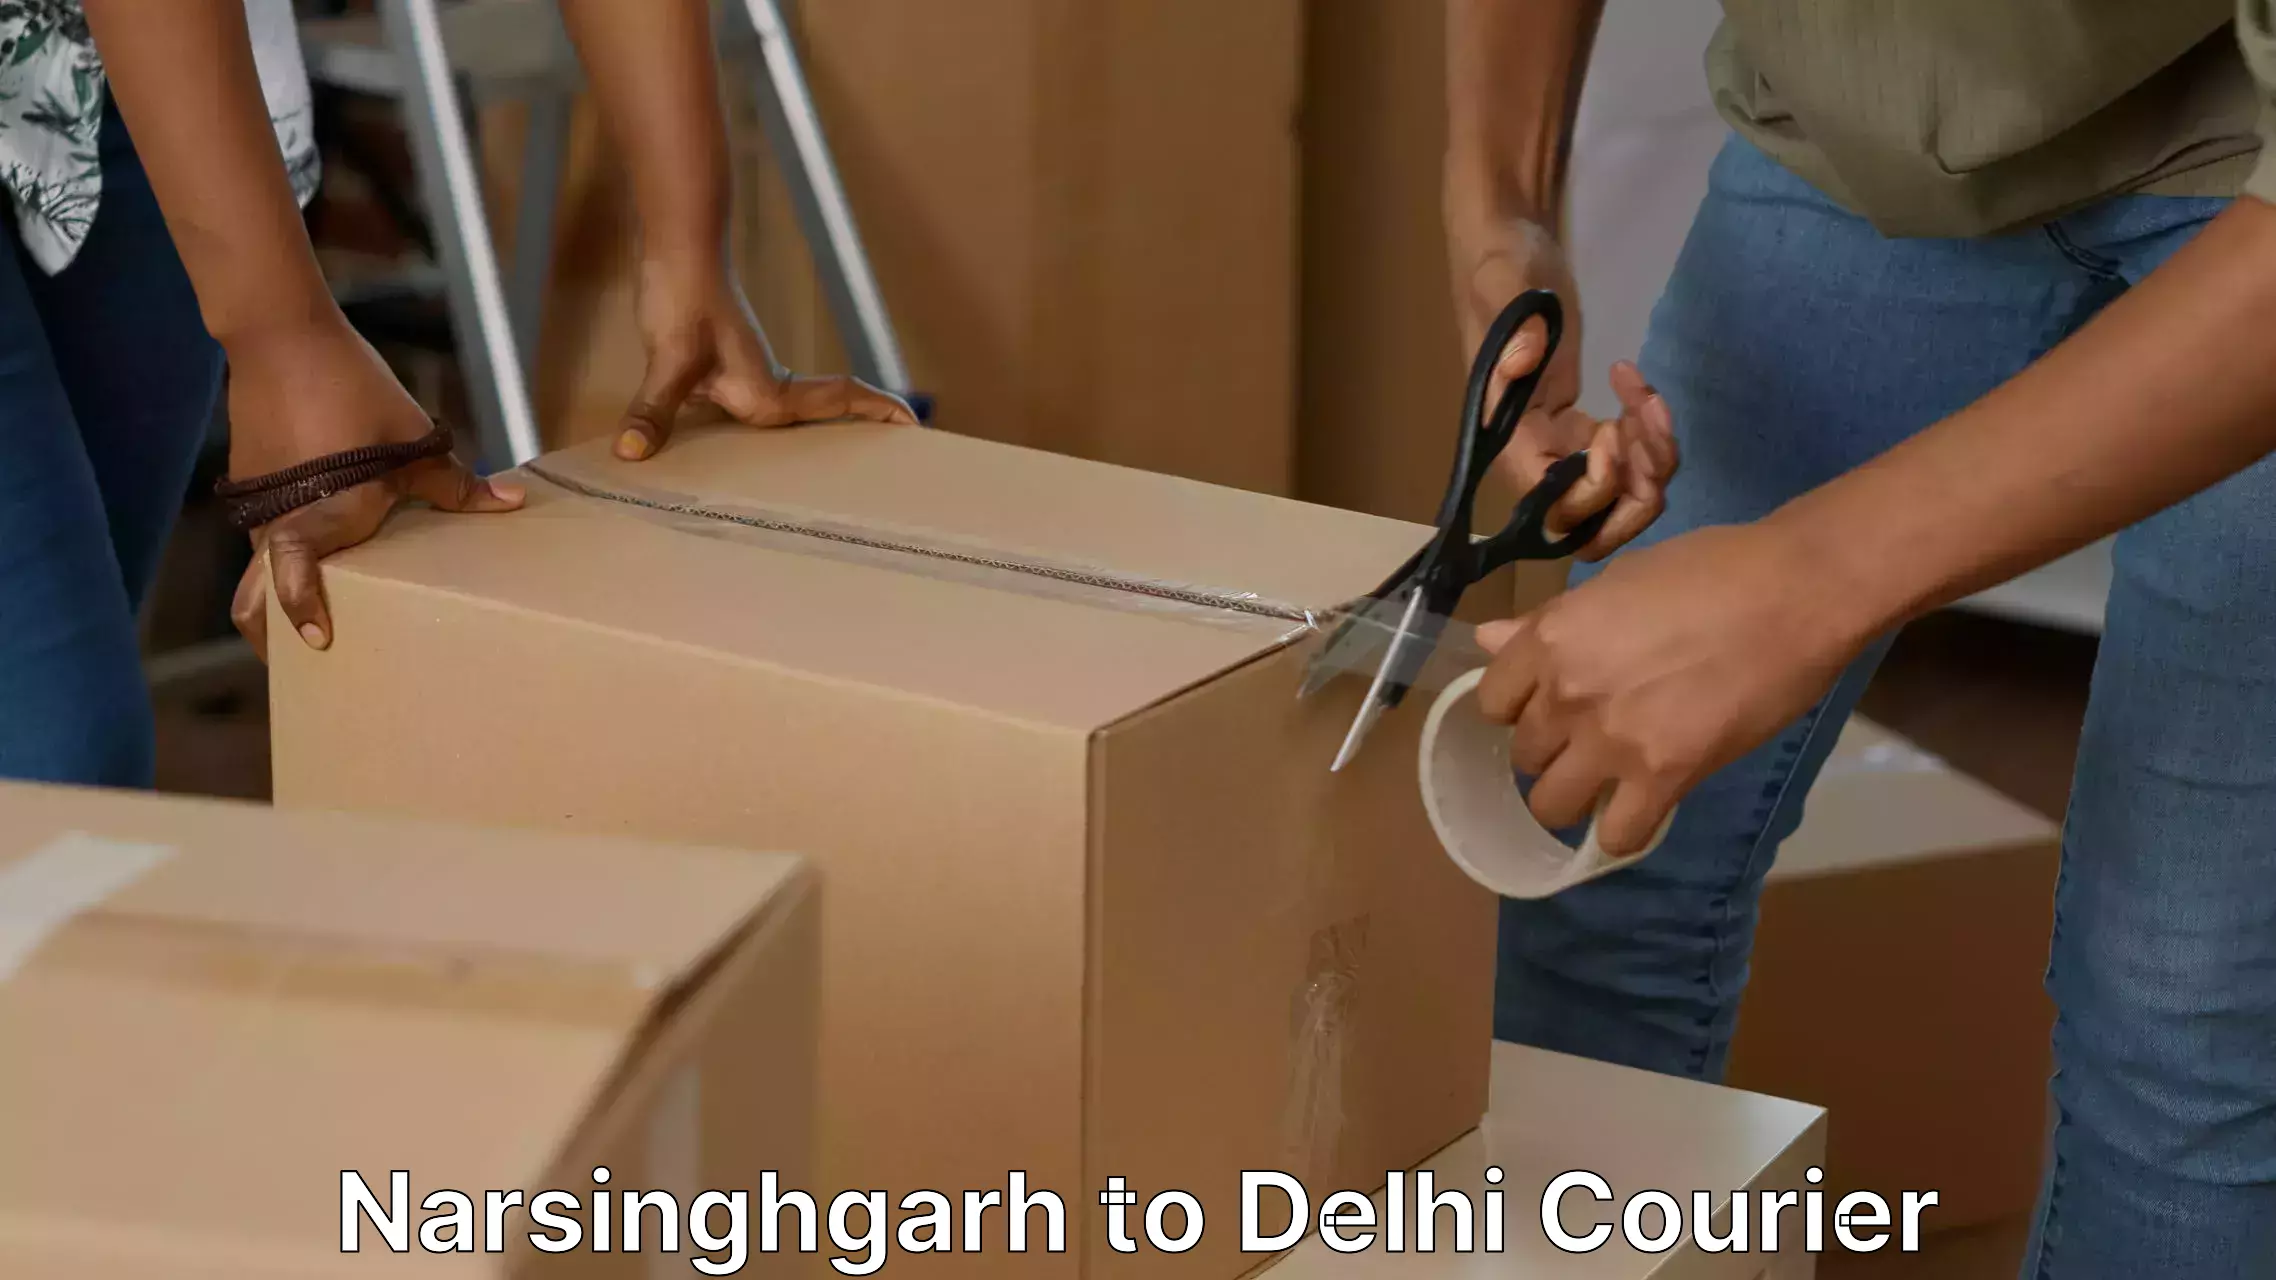 Furniture transport experts Narsinghgarh to Lodhi Road